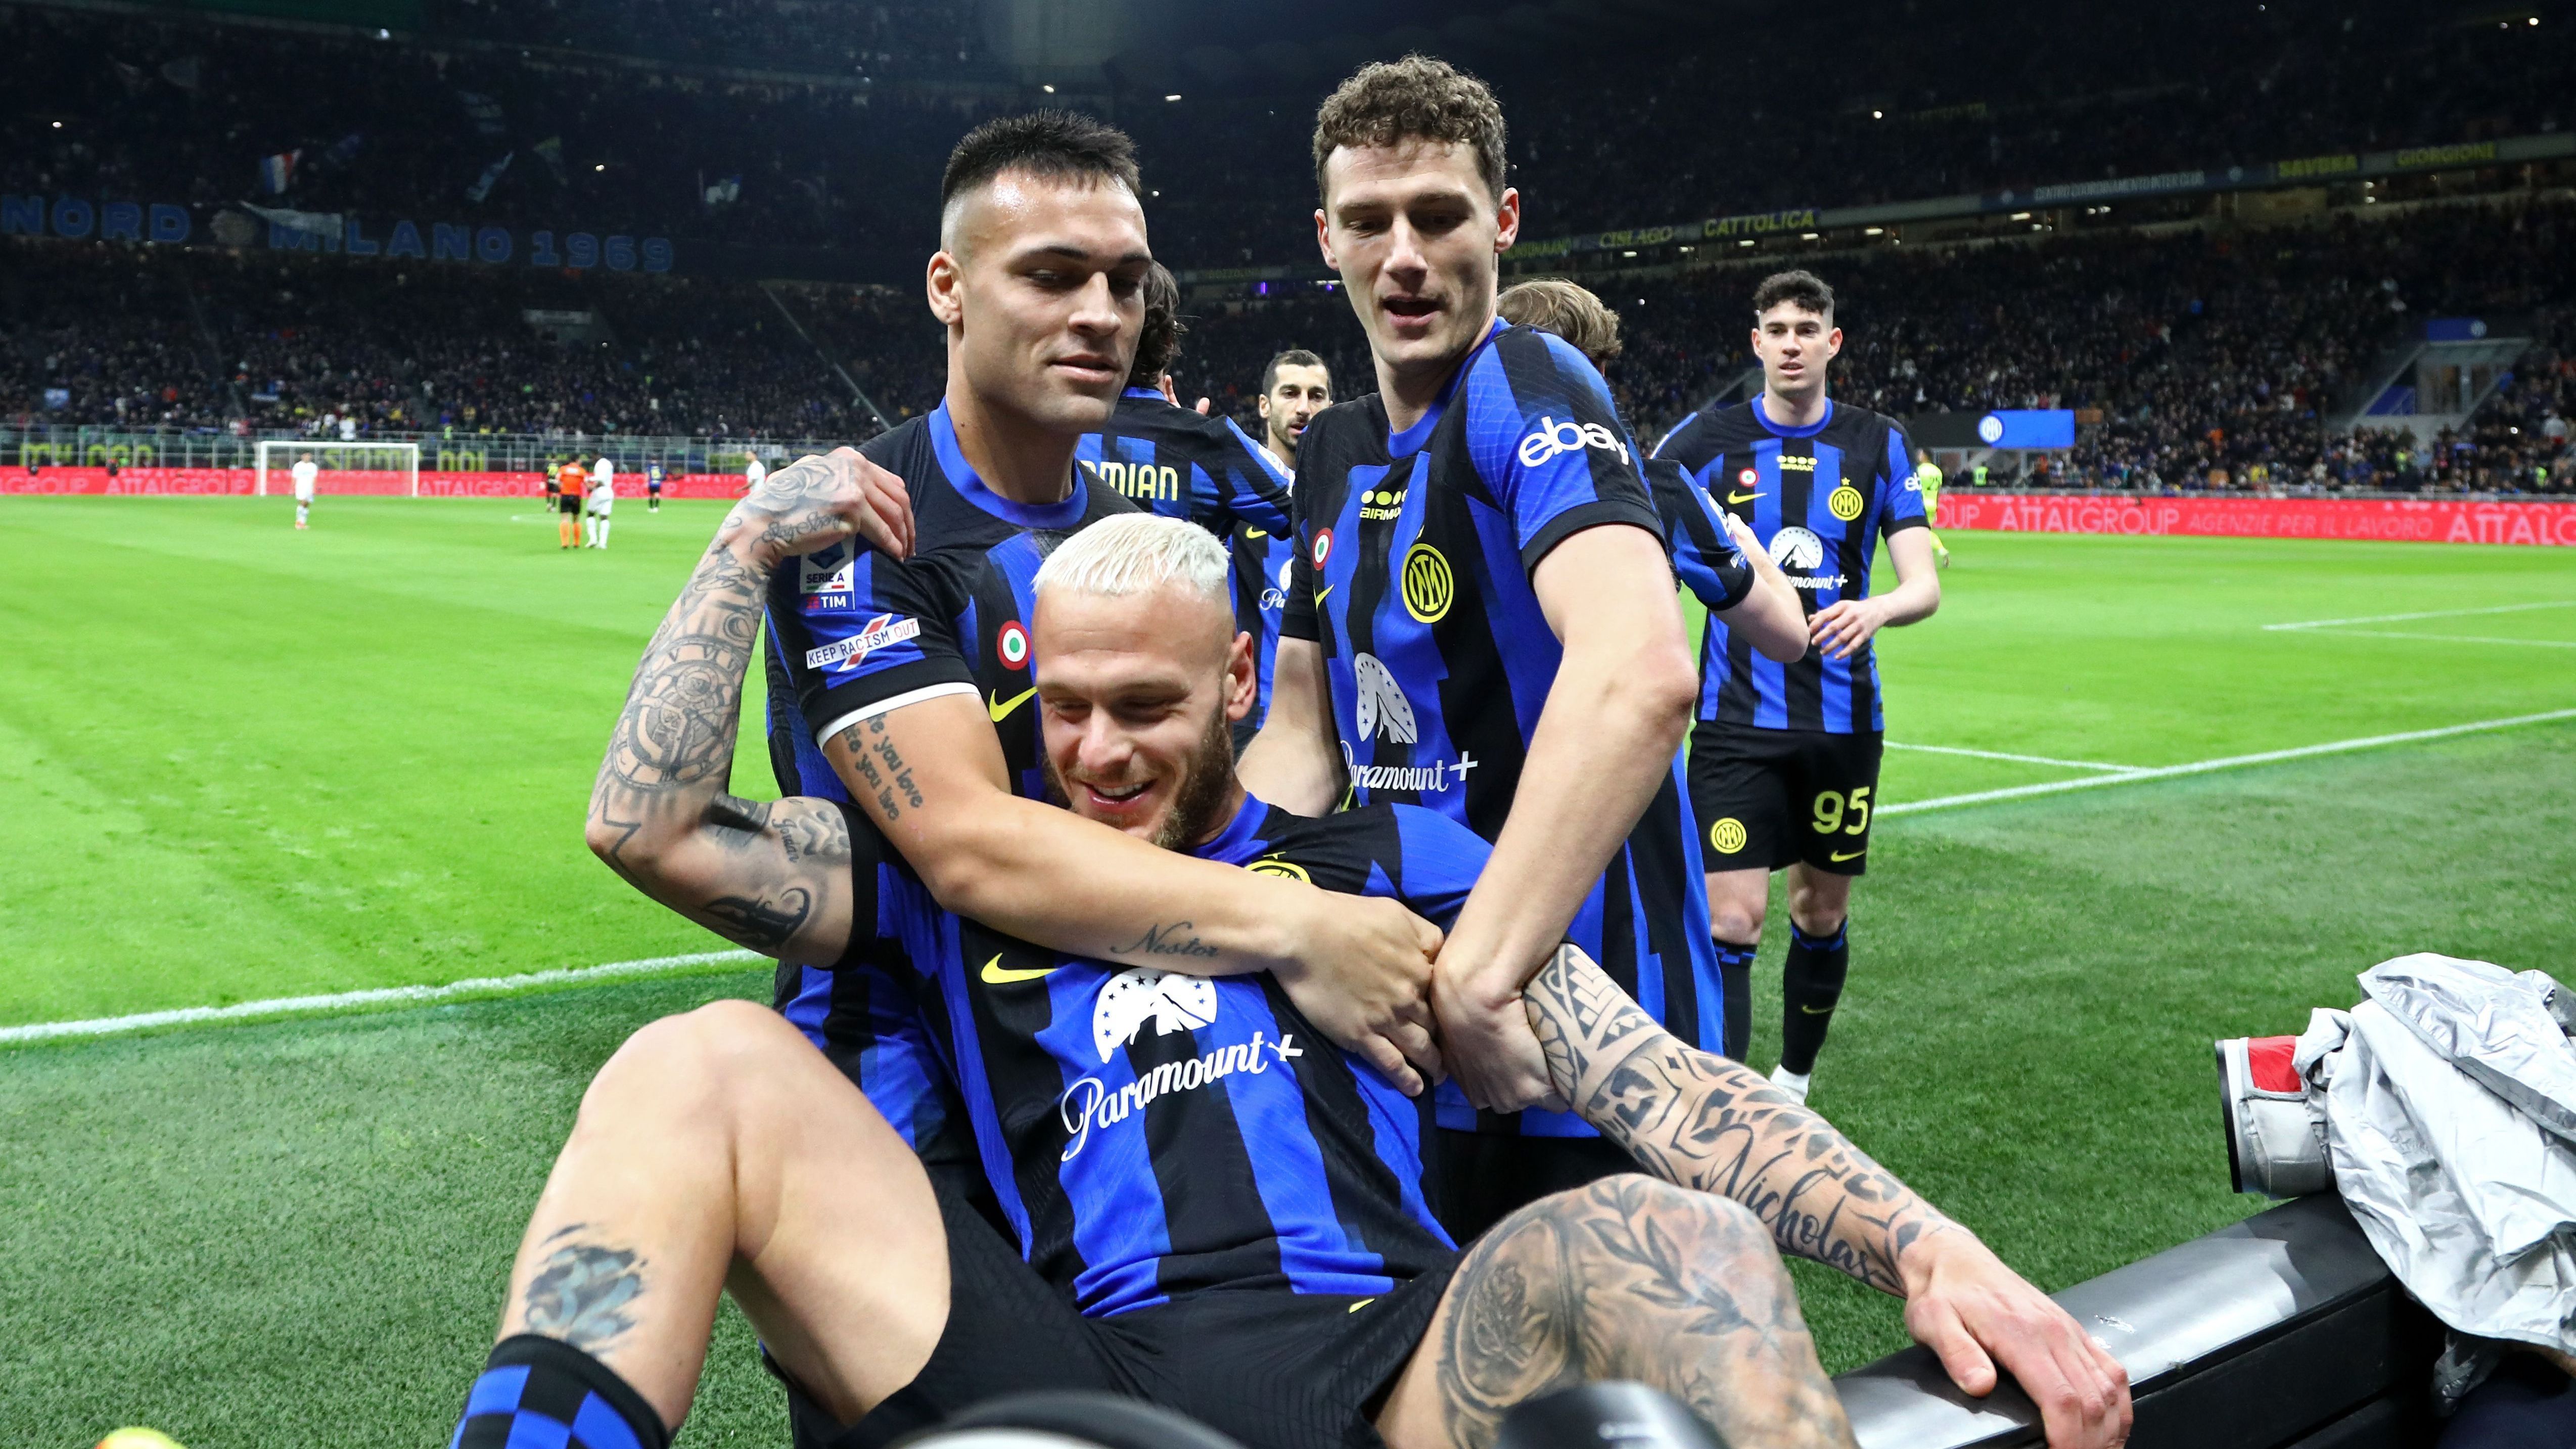 <strong>Inter Mailand (Italien)</strong><br>Mit erdrückender Dominanz sicherte sich Inter Mailand erneut den Scudetto in Italien. Ob es auch international in der kommenden Saison wieder besser läuft? In dieser Saison war bereits im Achtelfinale Schluss.